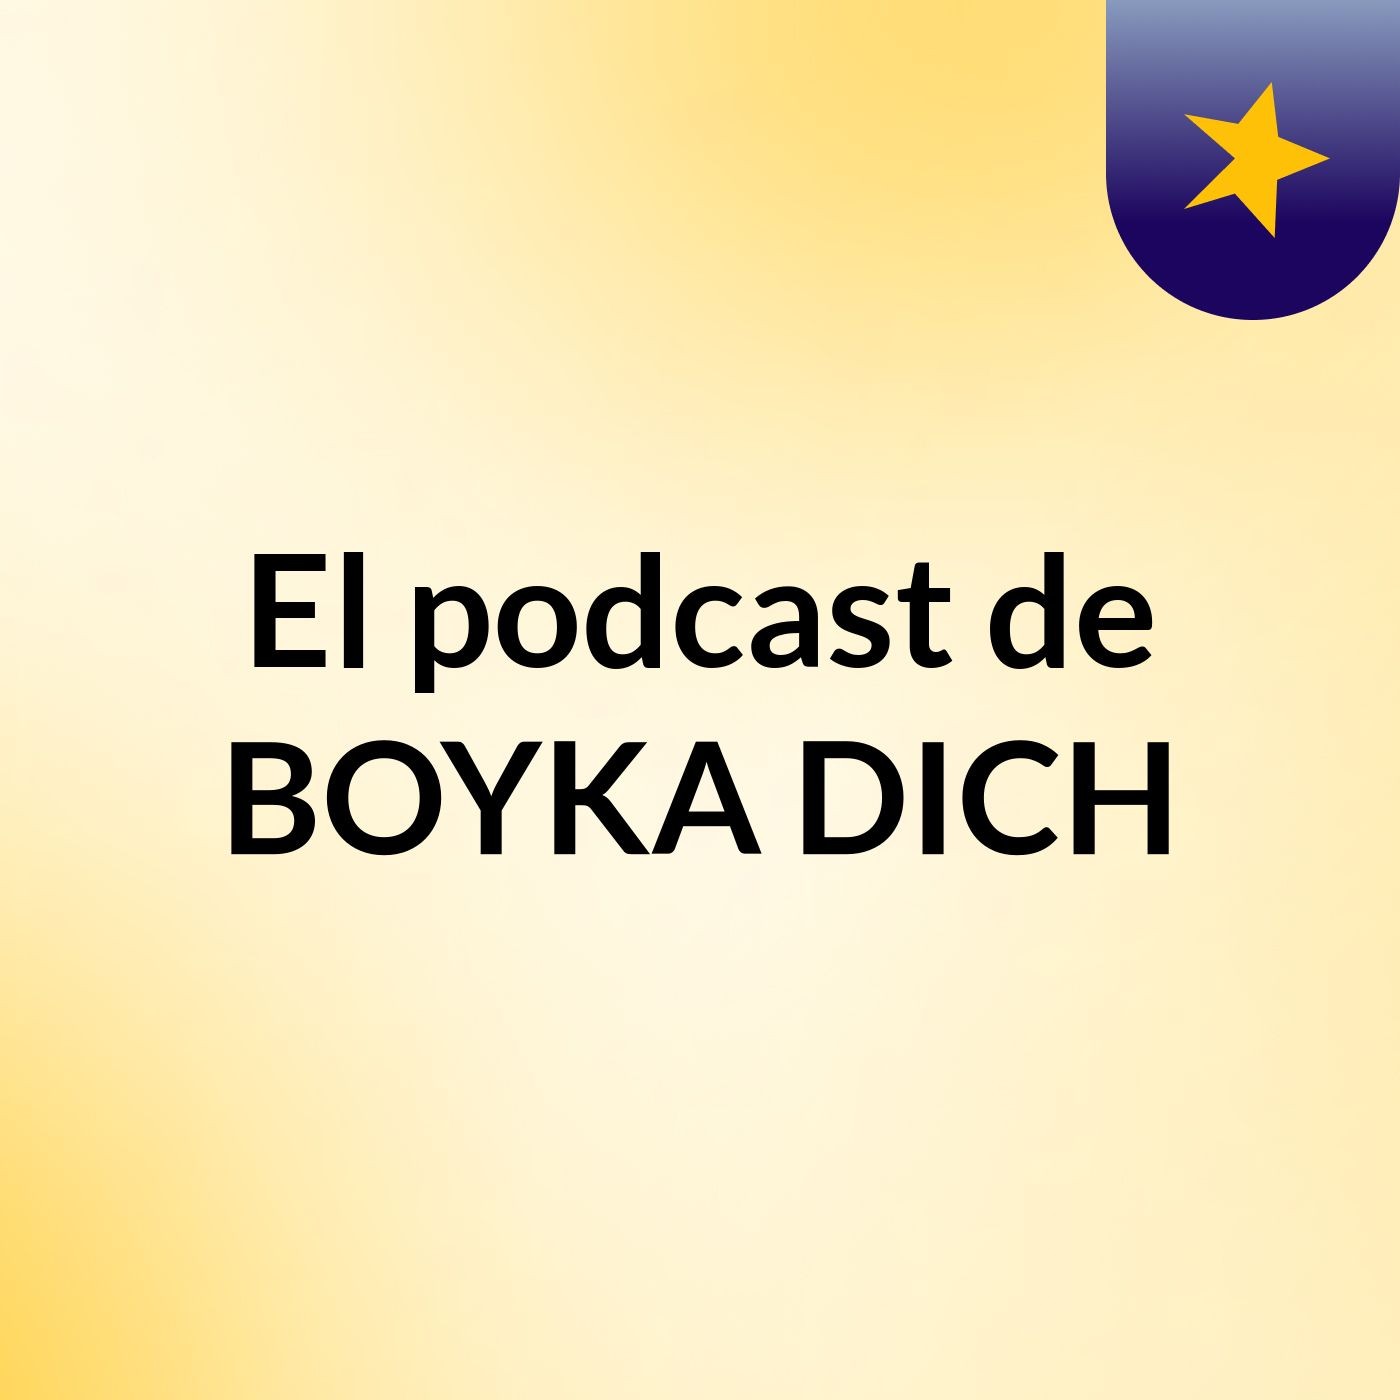 El podcast de BOYKA DICH